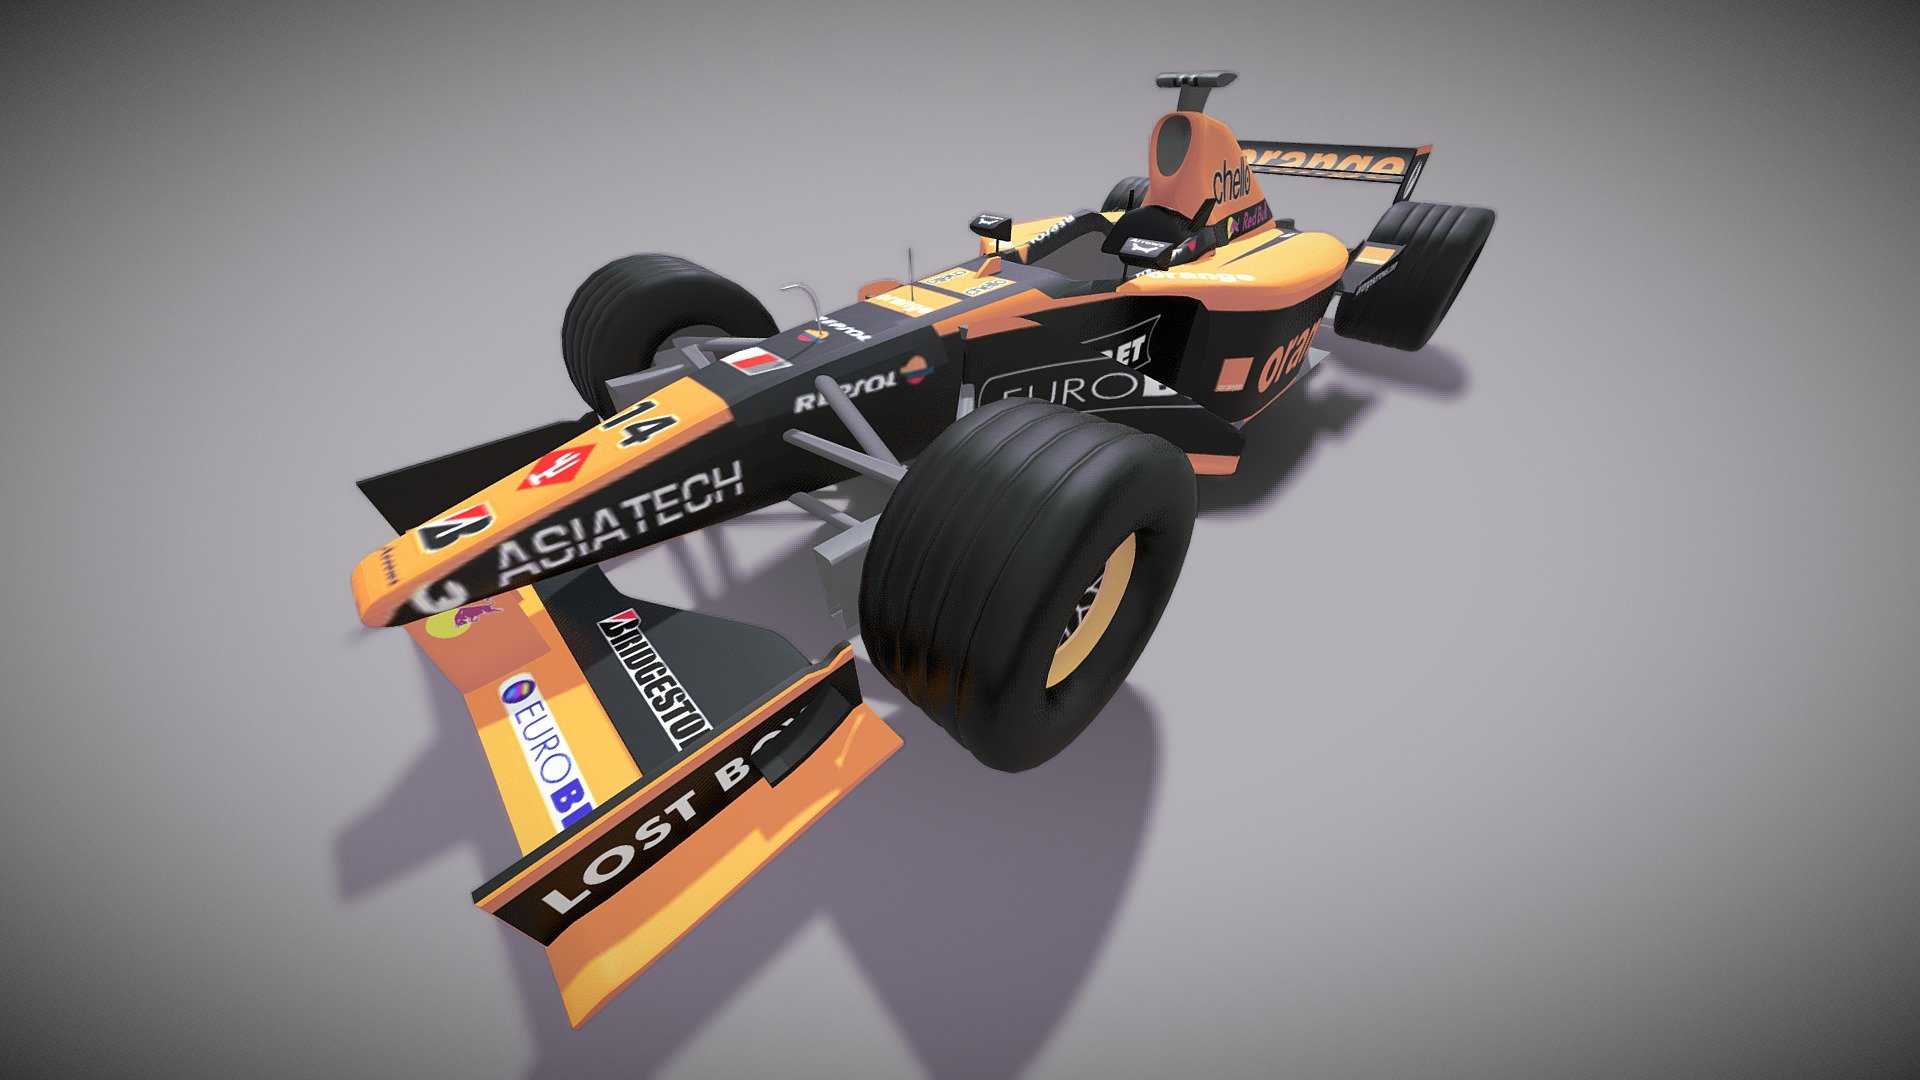 Uplod by vaibhav pancholi - F1 Race Car - 3D model by dm.vaibhav1442 3d model